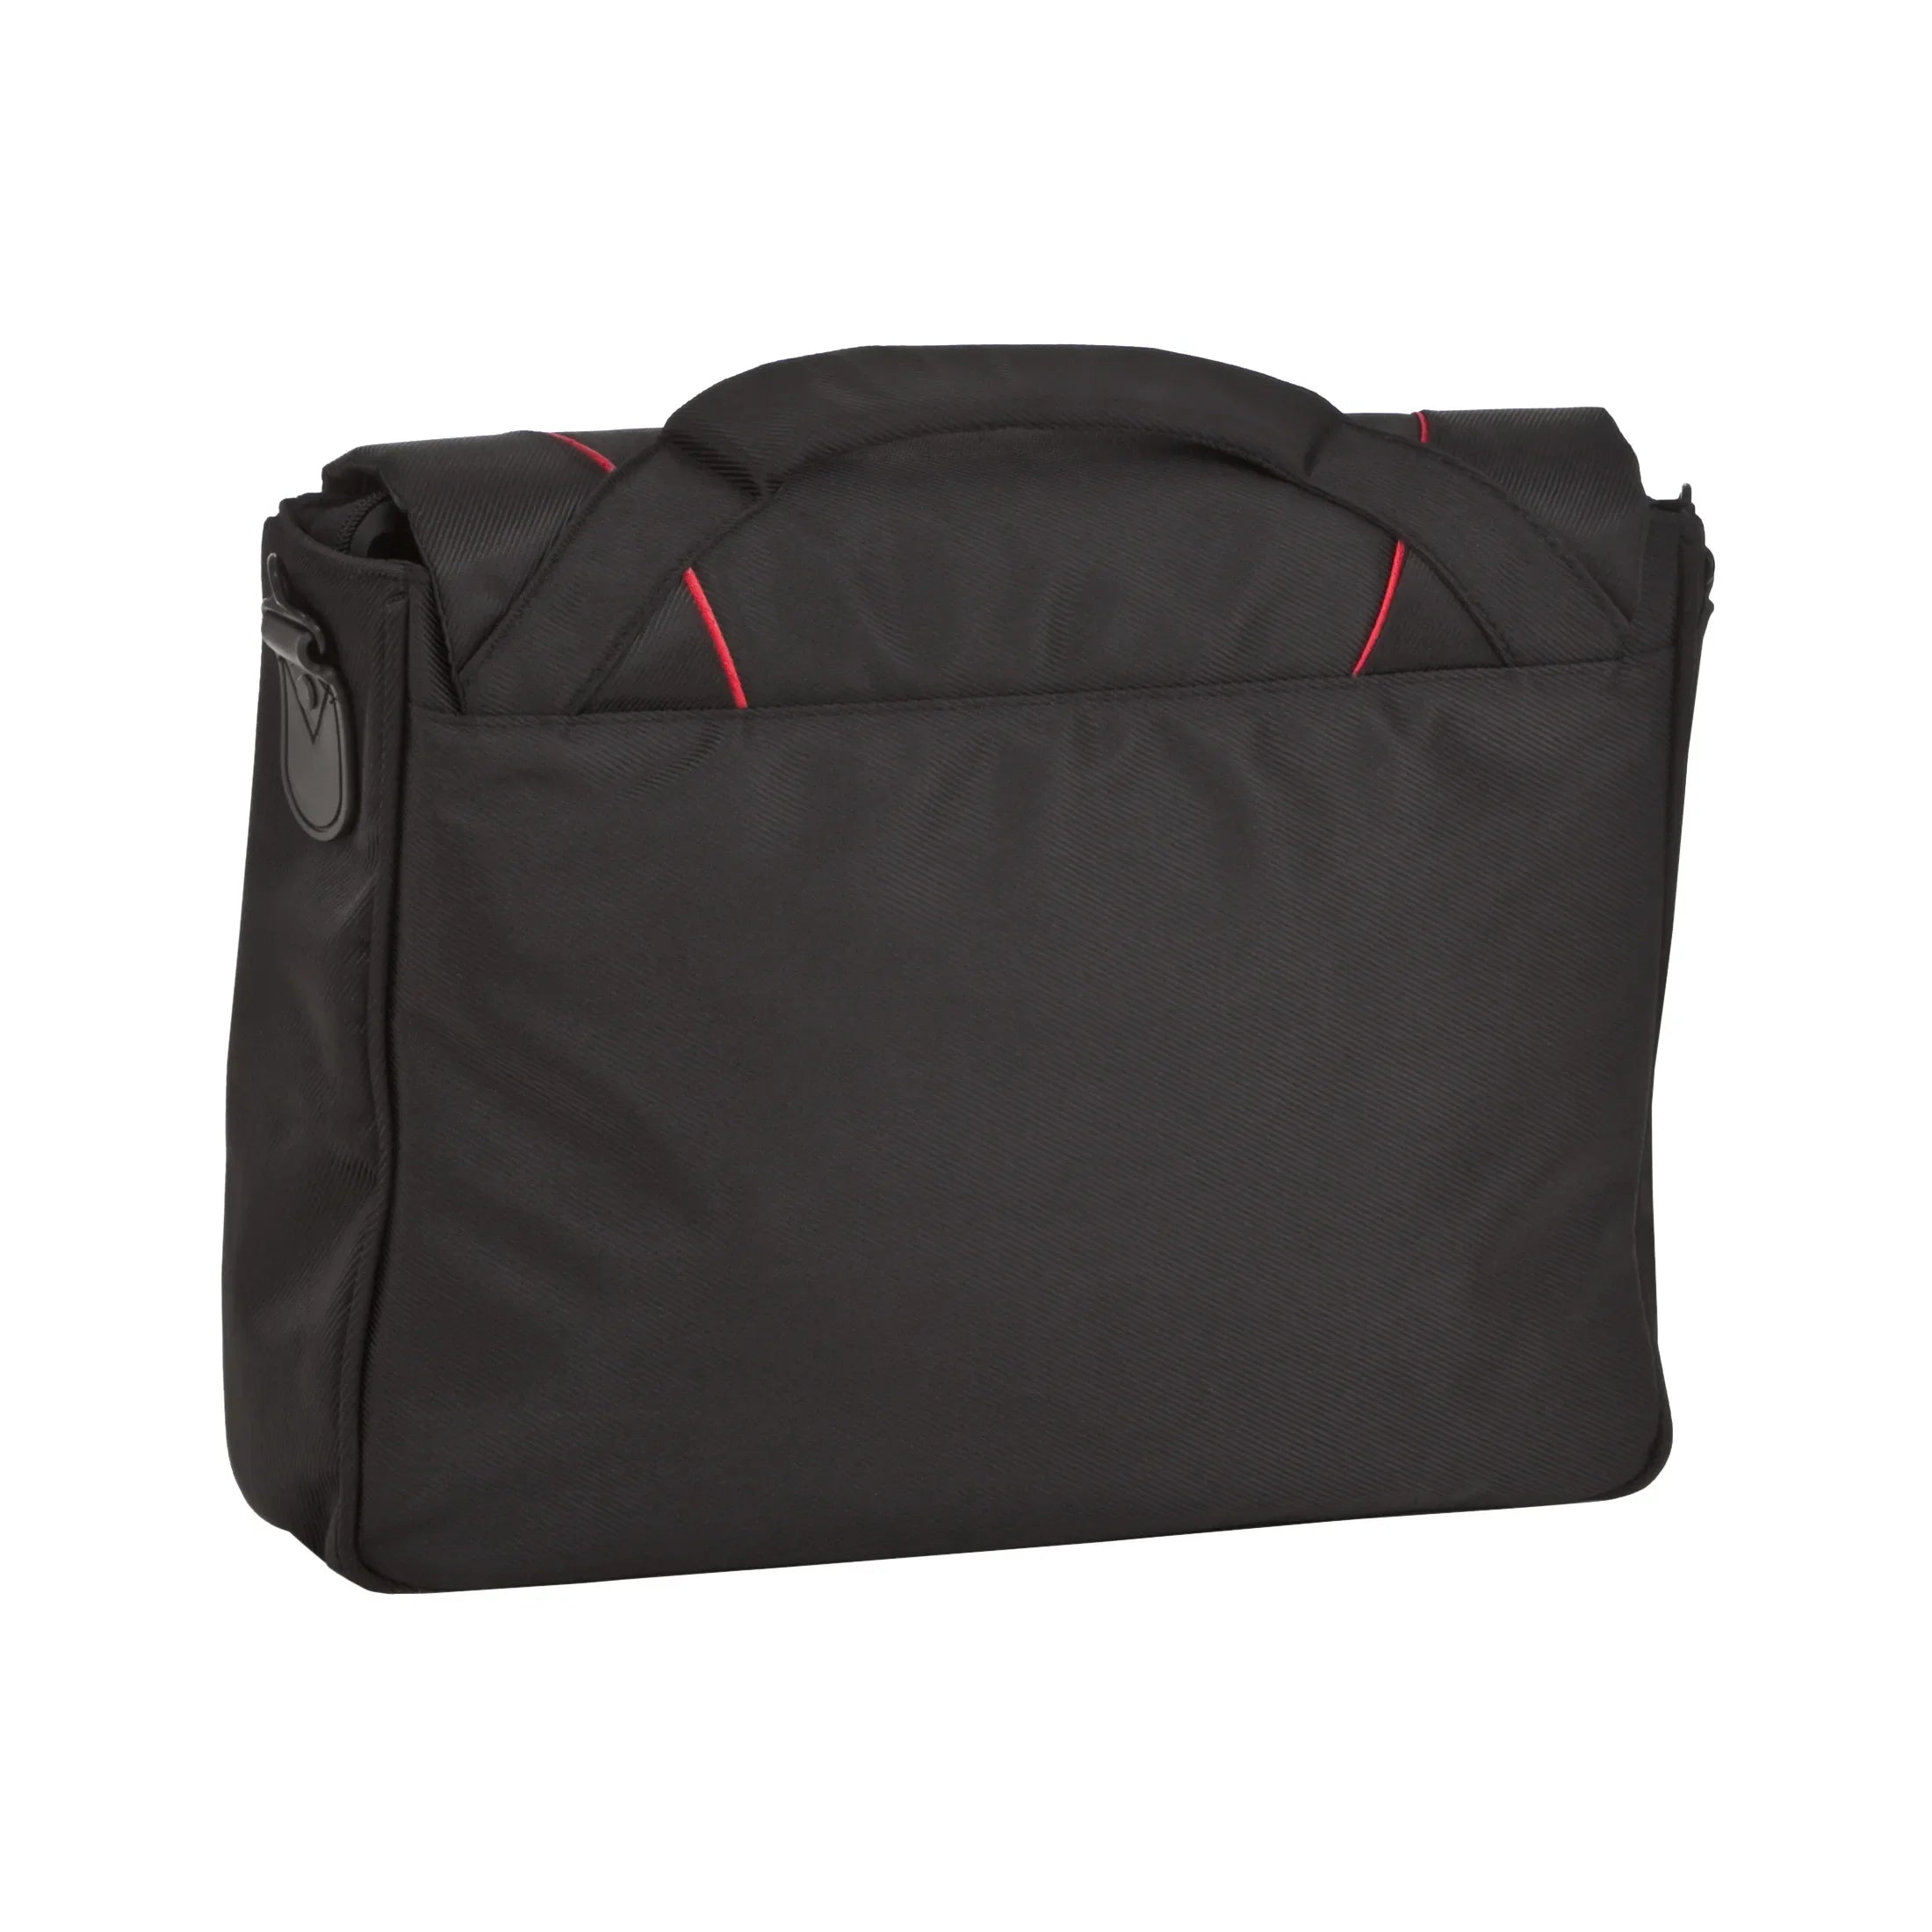 Hama Sportsline Freedom Messenger Bag mit Laptopfach 39 cm - schwarz